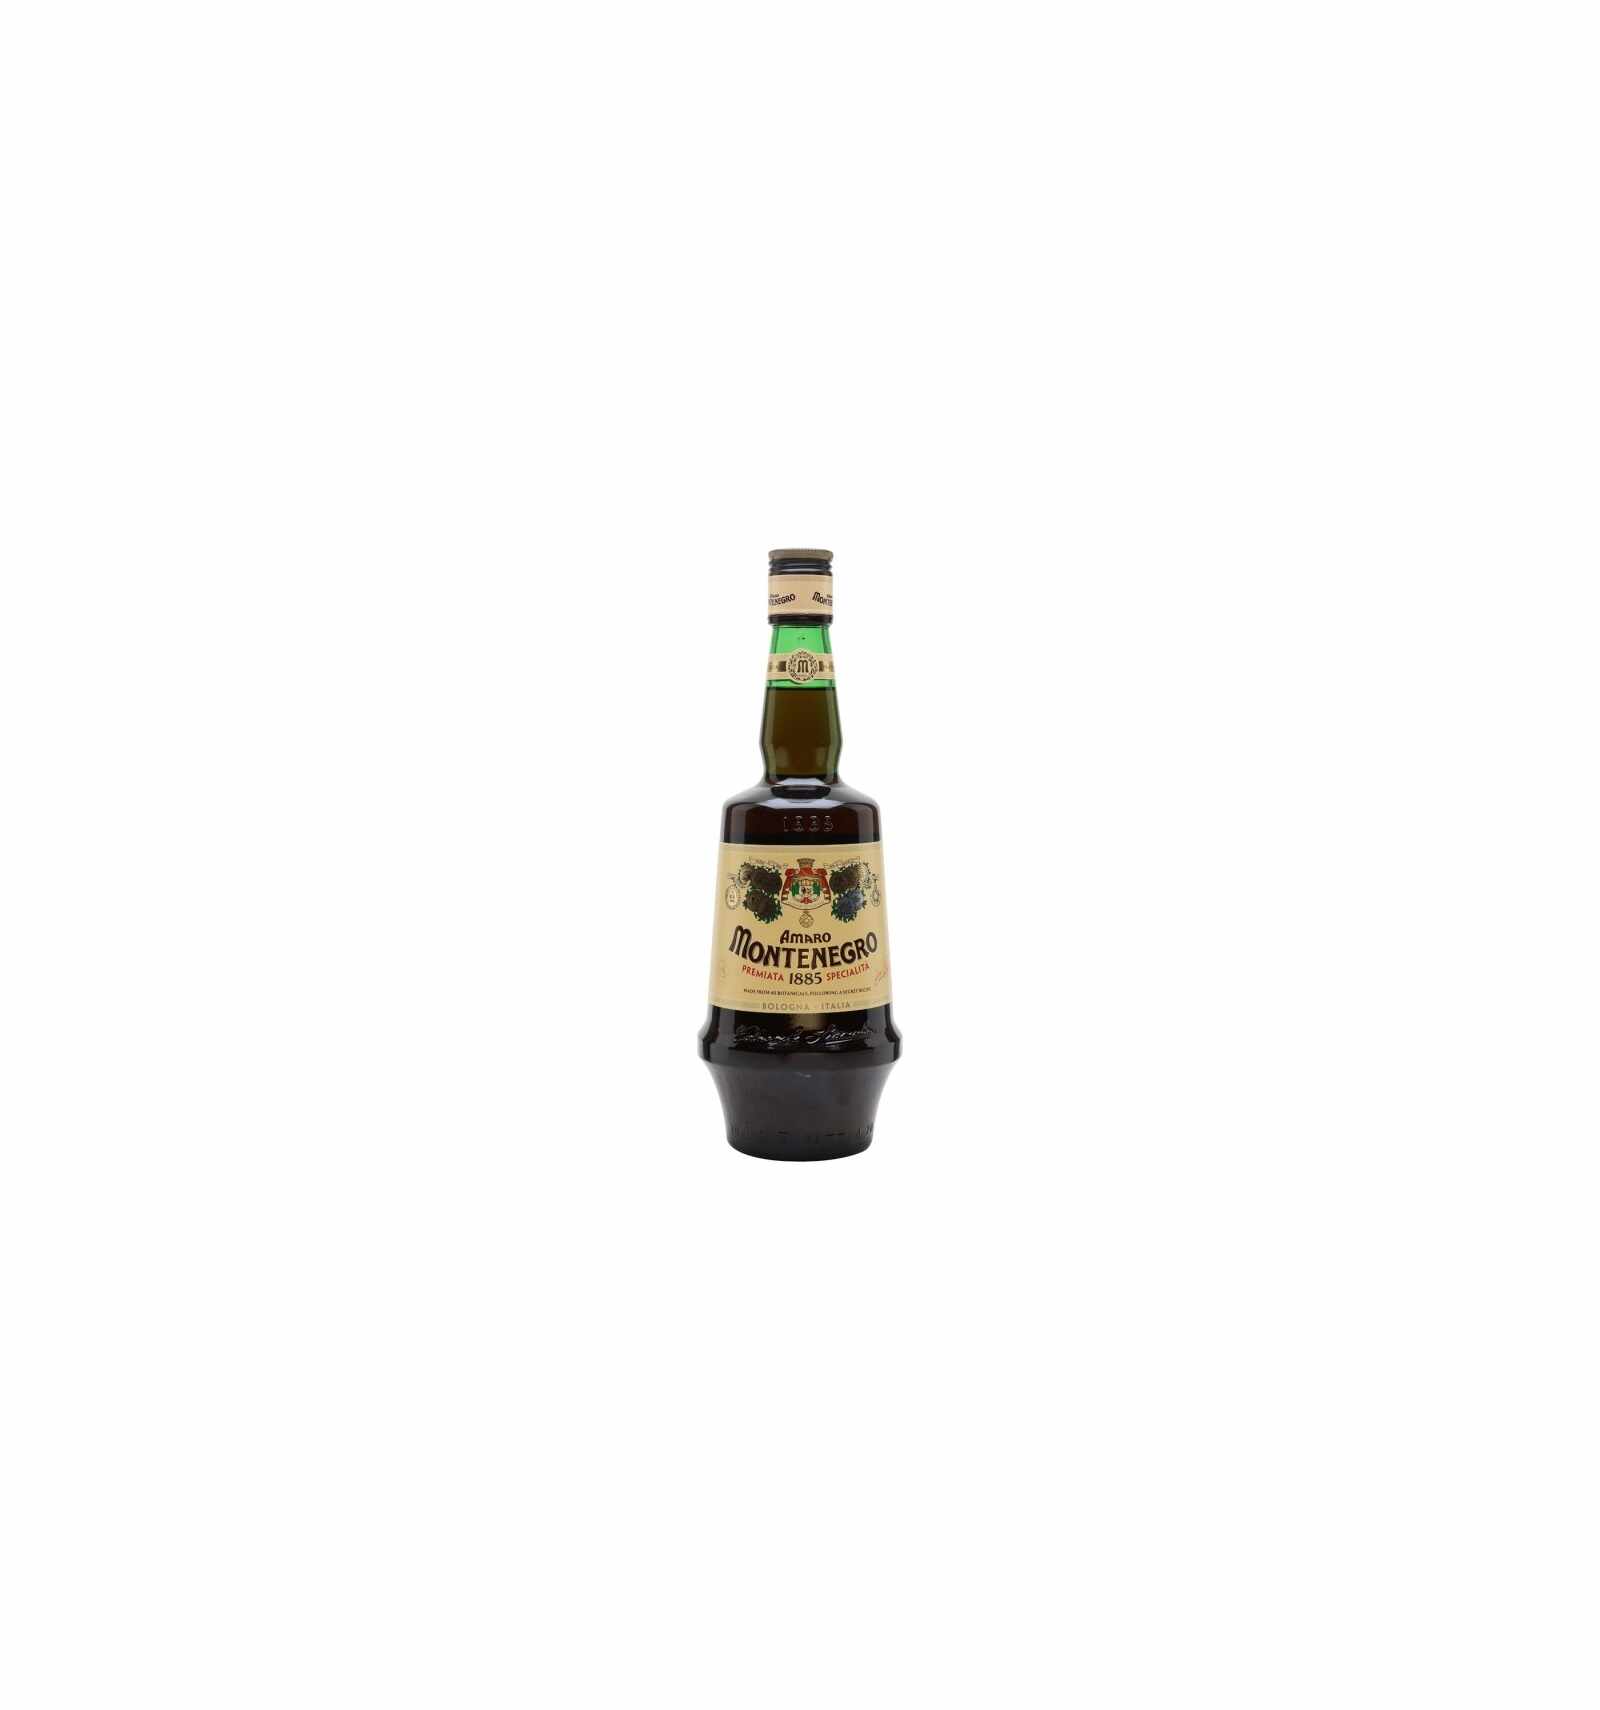 Lichior digestiv Amaro Montenegro 23% alc., 0.7L, Italia